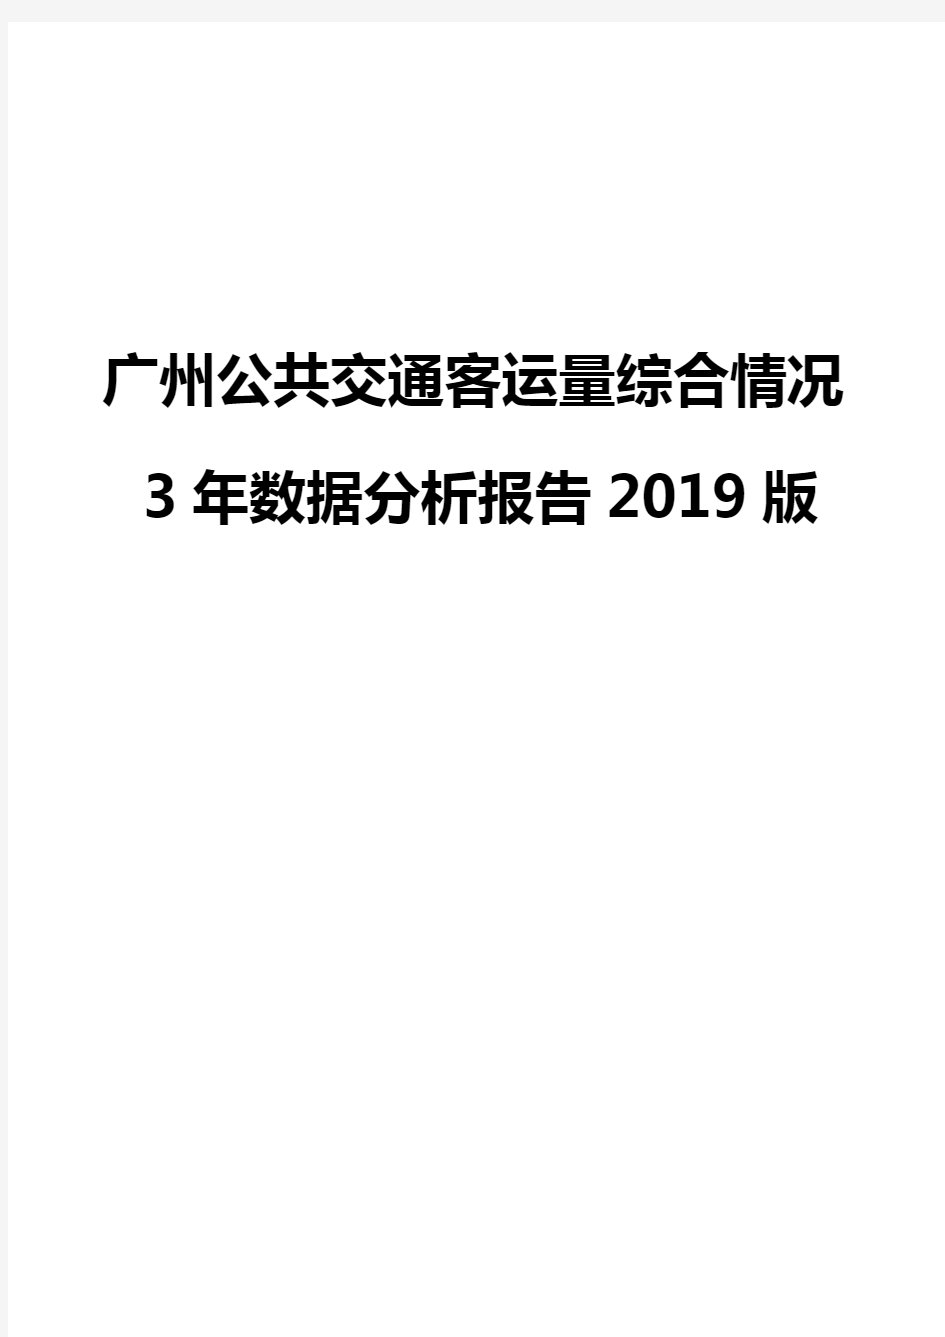 广州公共交通客运量综合情况3年数据分析报告2019版